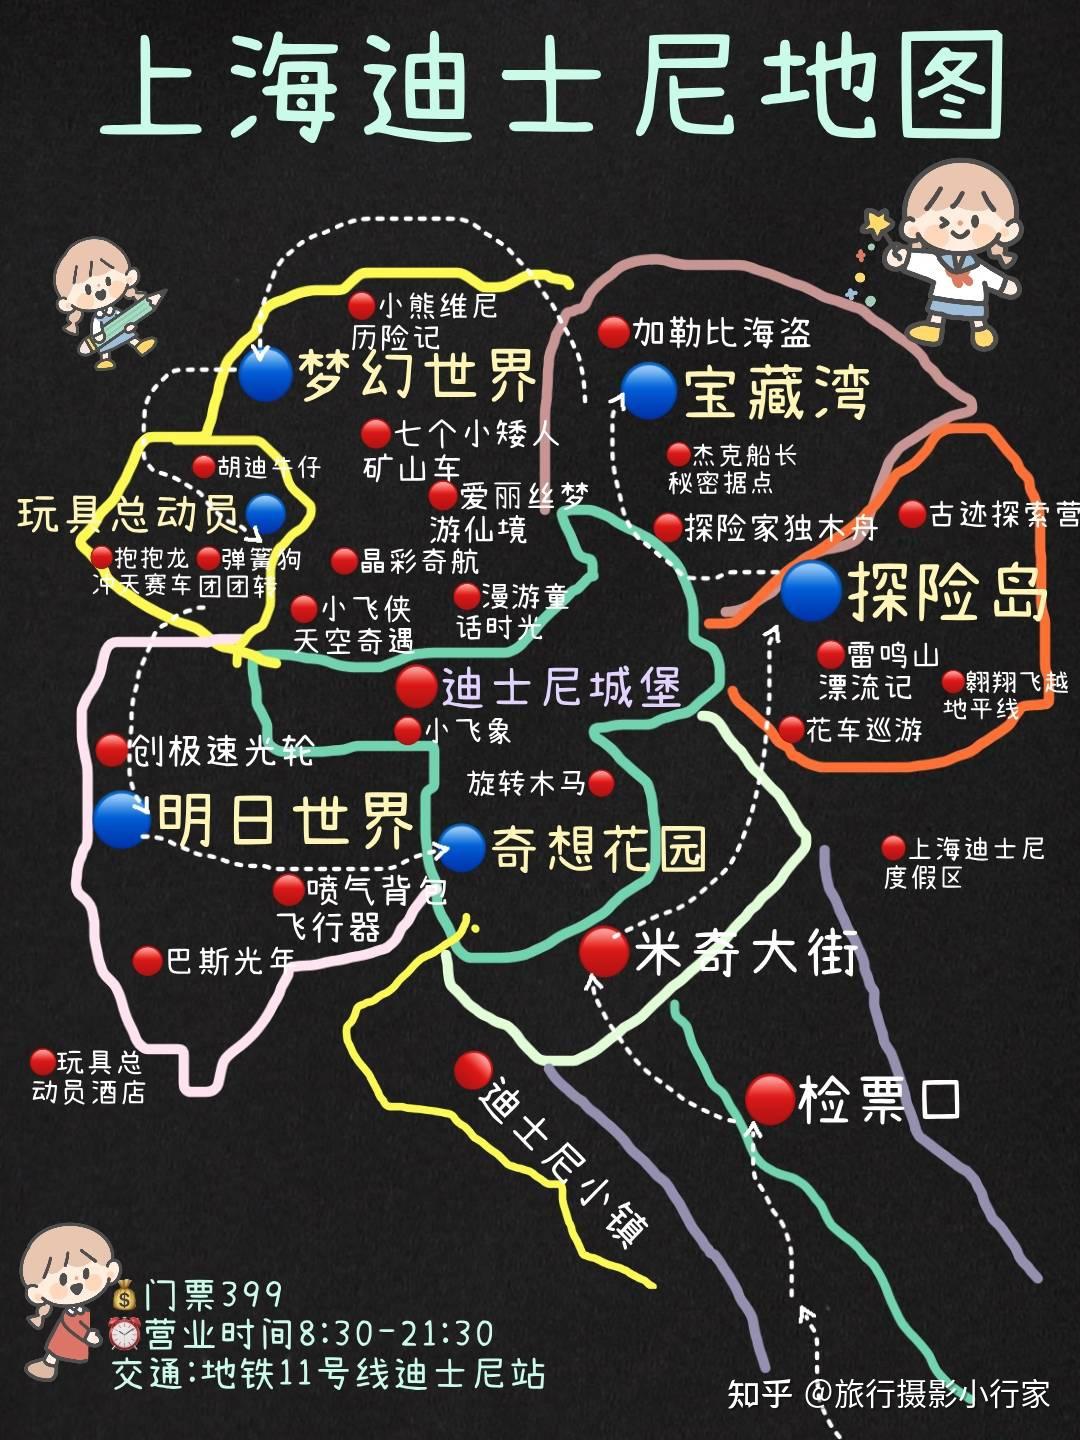 上海旅游行李寄存攻略景点地图地铁沿线景点及上海美食